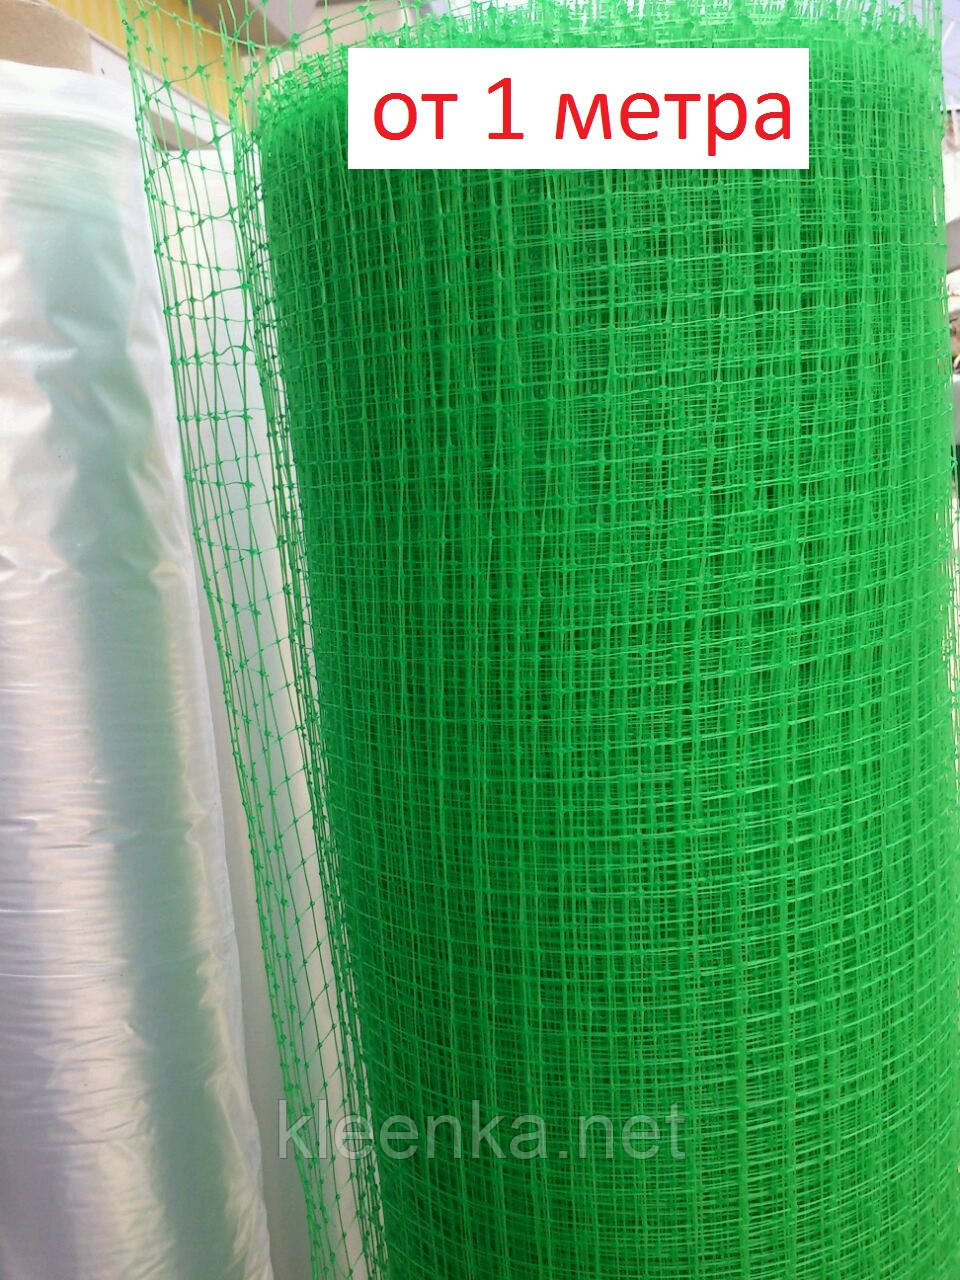 Сітка вольерная зелена для огорожі курей, циплят та ін. домашніх тварин, на метраж, 1 м ширина